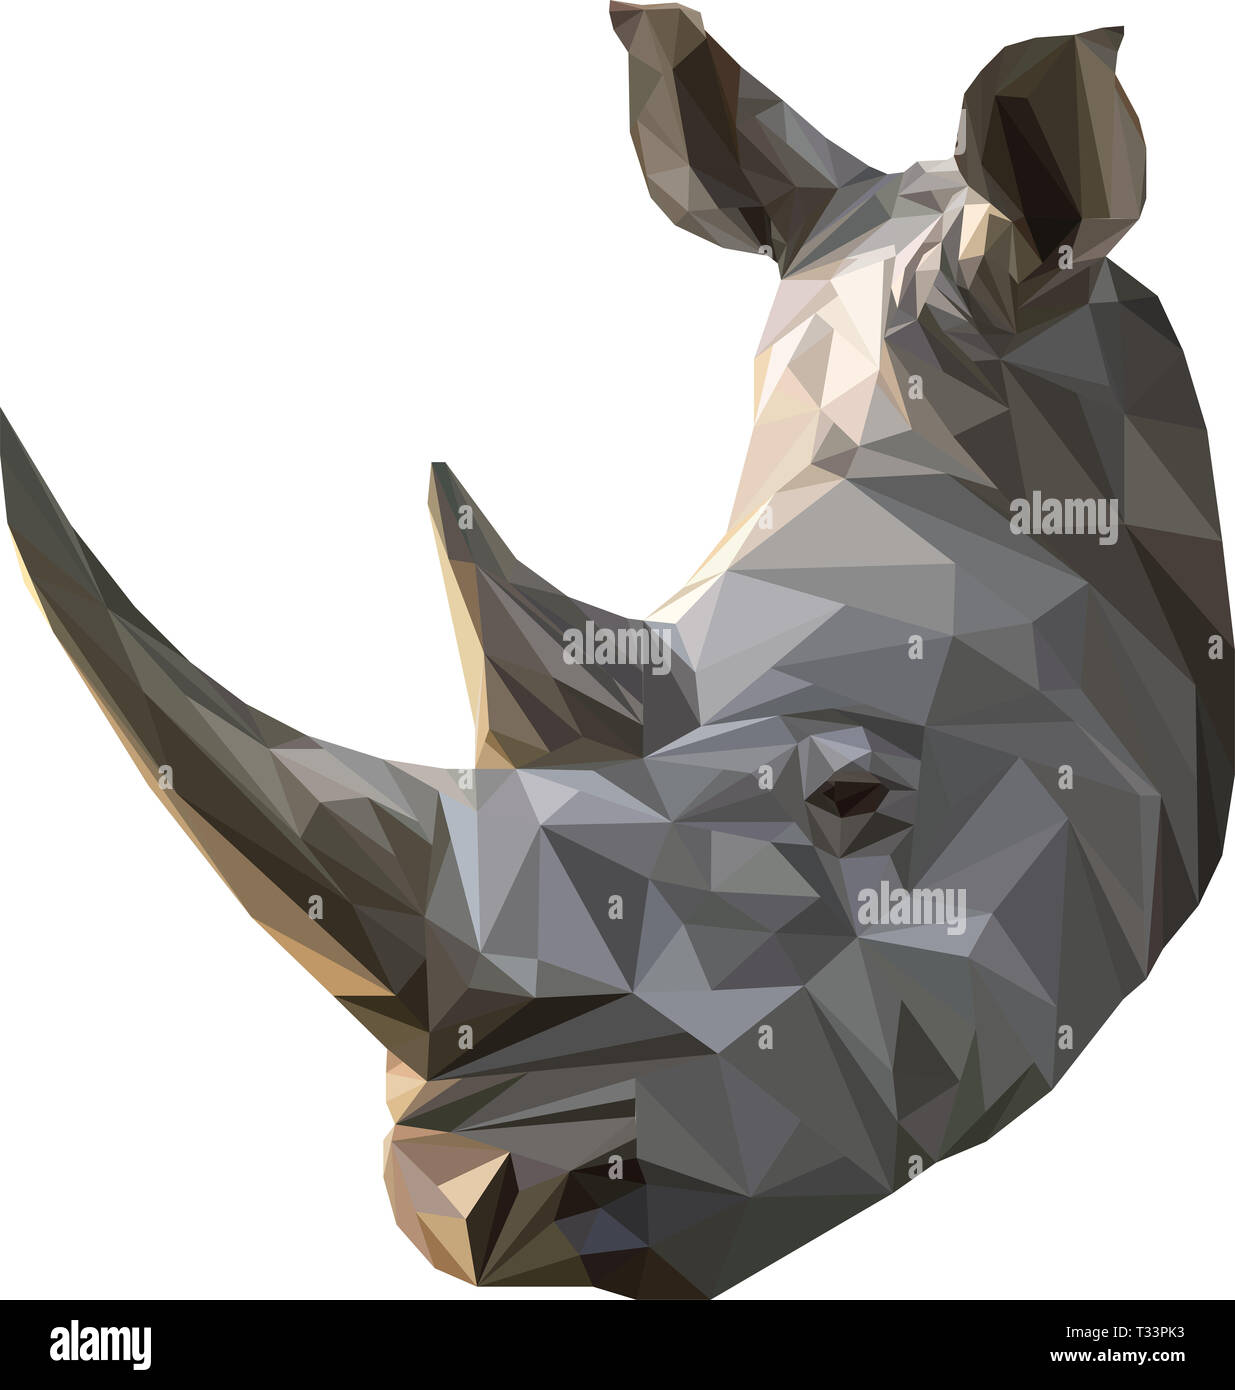 Baja realista poli ilustración de un rinoceronte africano; parte de los cinco grandes Foto de stock